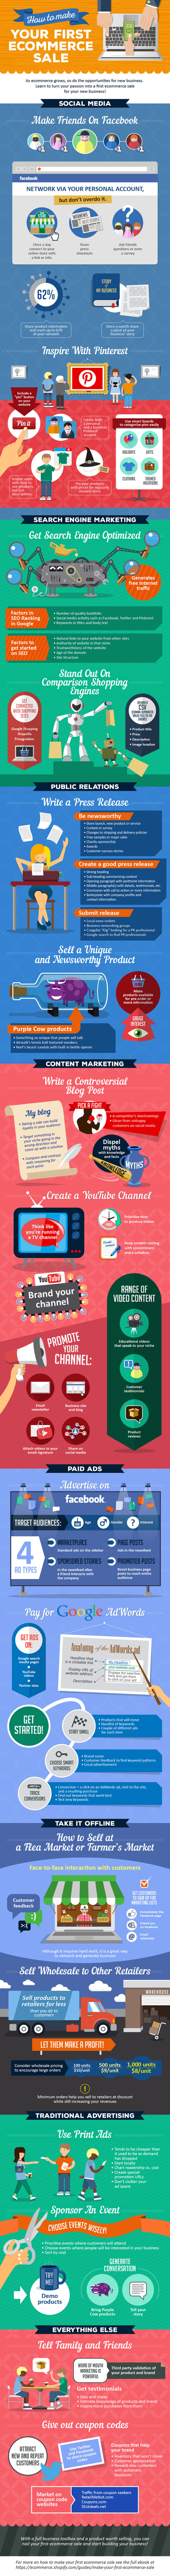 Cómo hacer tu primera venta en comercio electrónico #infografia #infographic #ecommerce | Seo, Social Media Marketing | Scoop.it